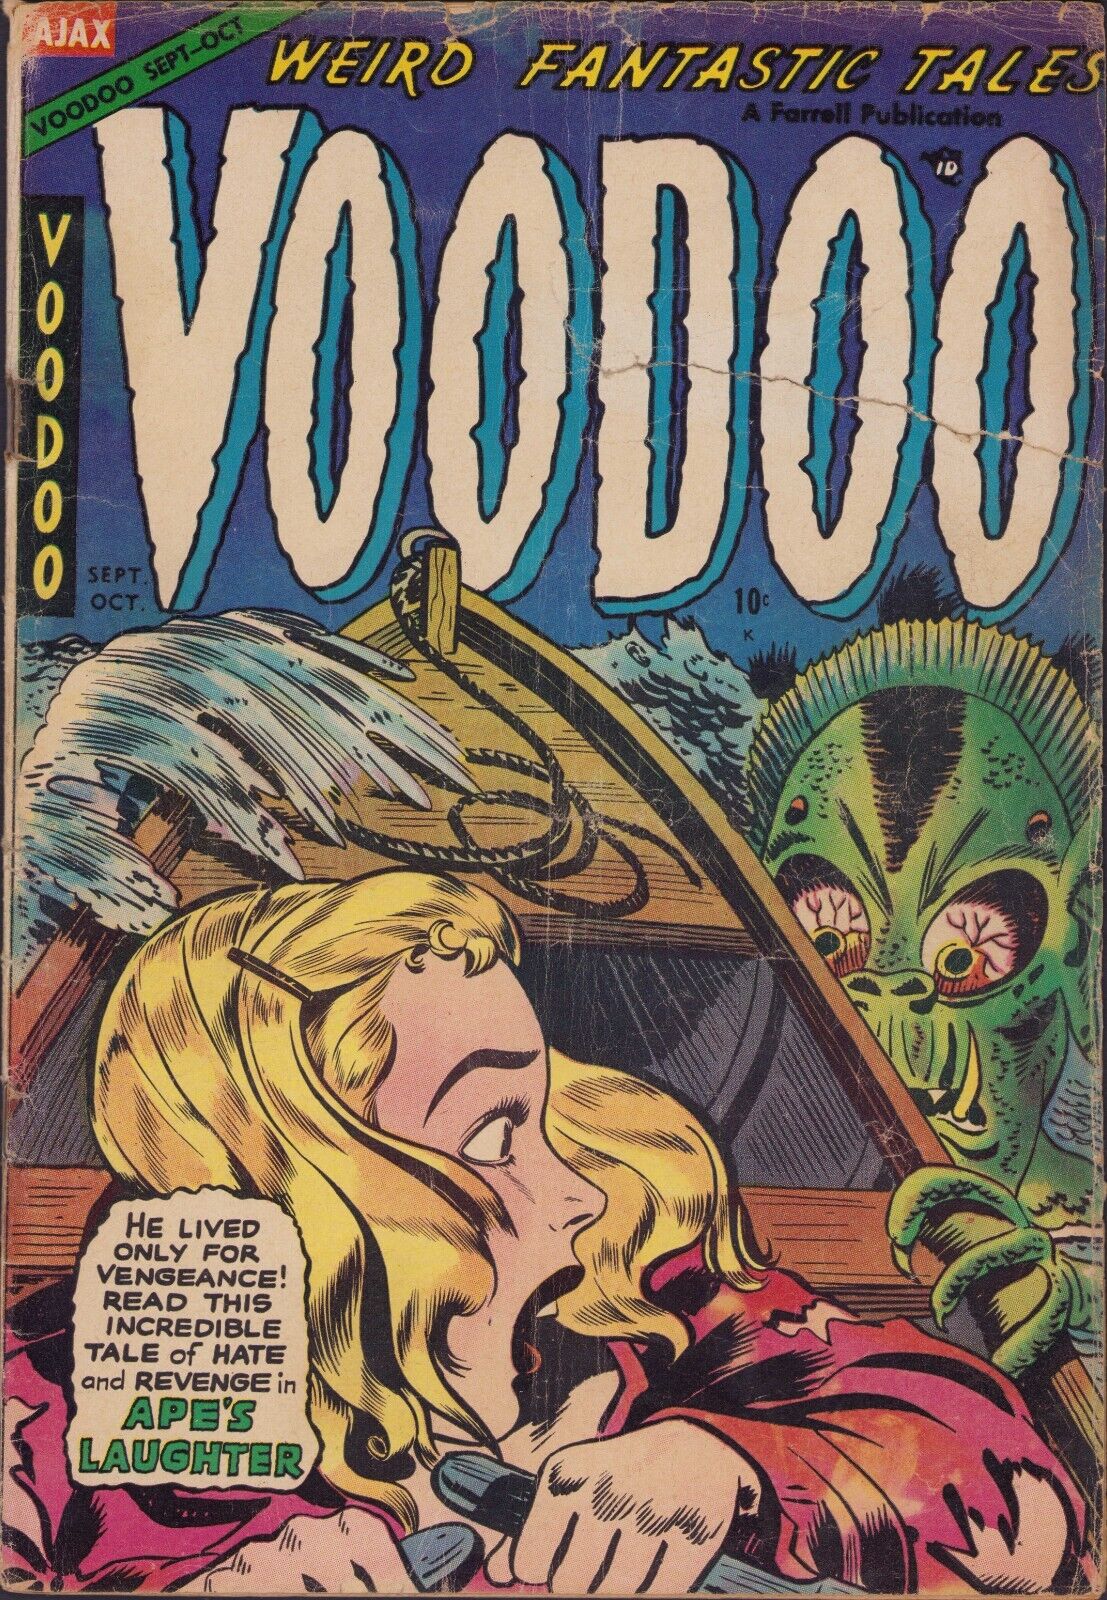 Voodoo #17 Ajax 1954